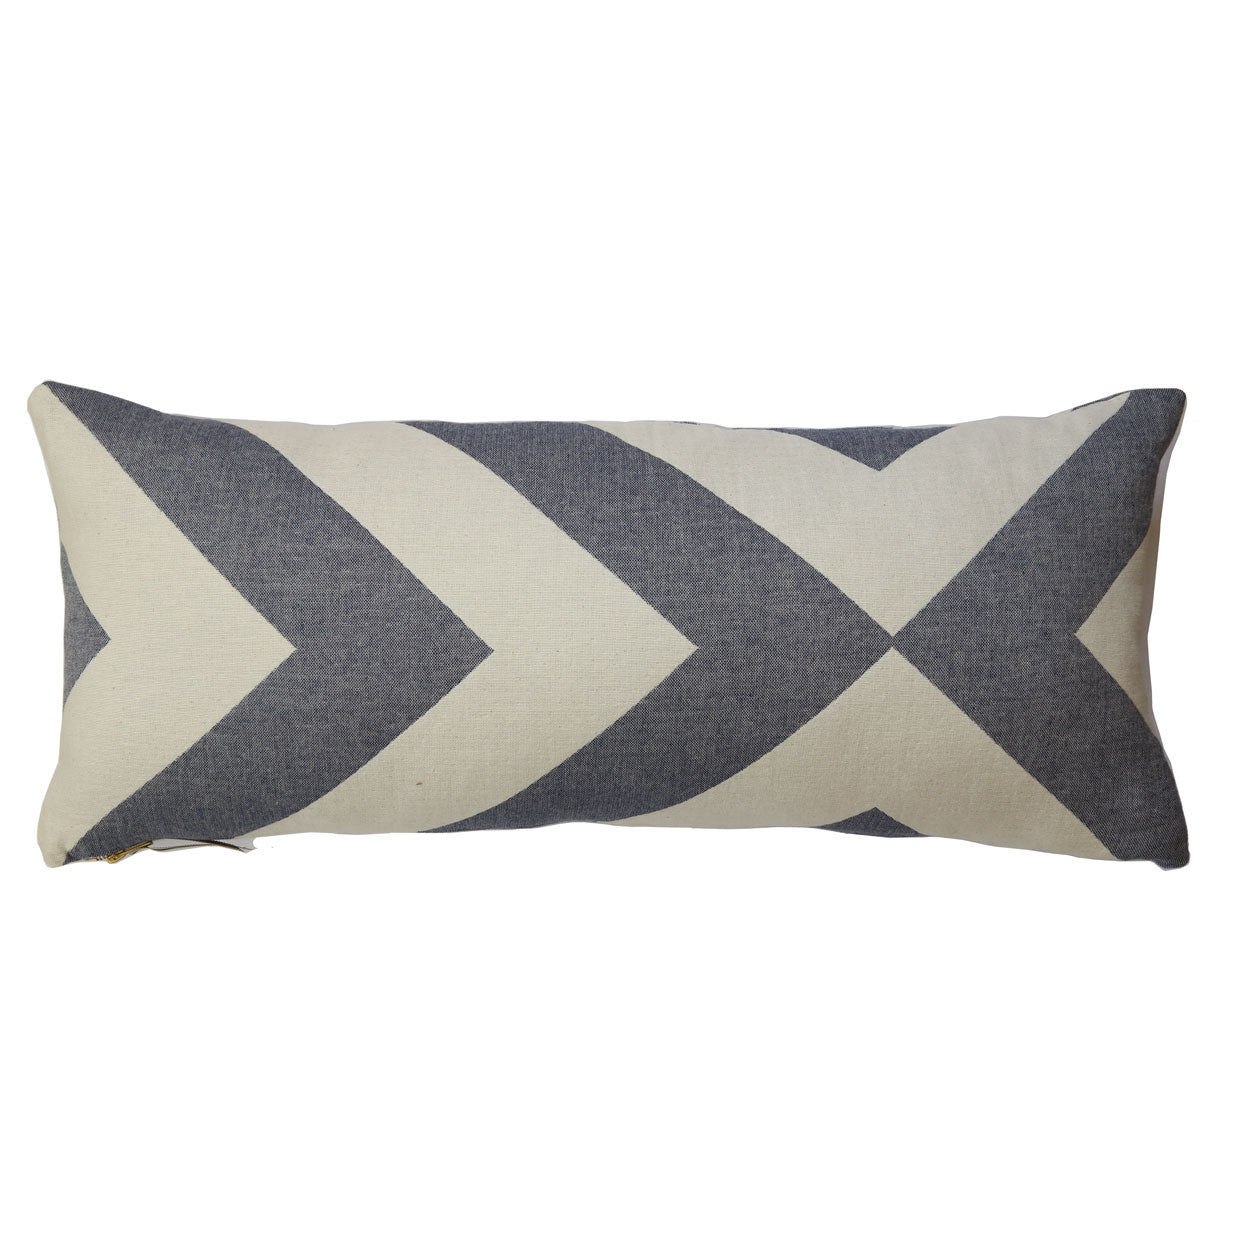 Extra Long Lumbar Pillows - Free US Shipping  Pillows, Long lumbar pillow,  African pillow